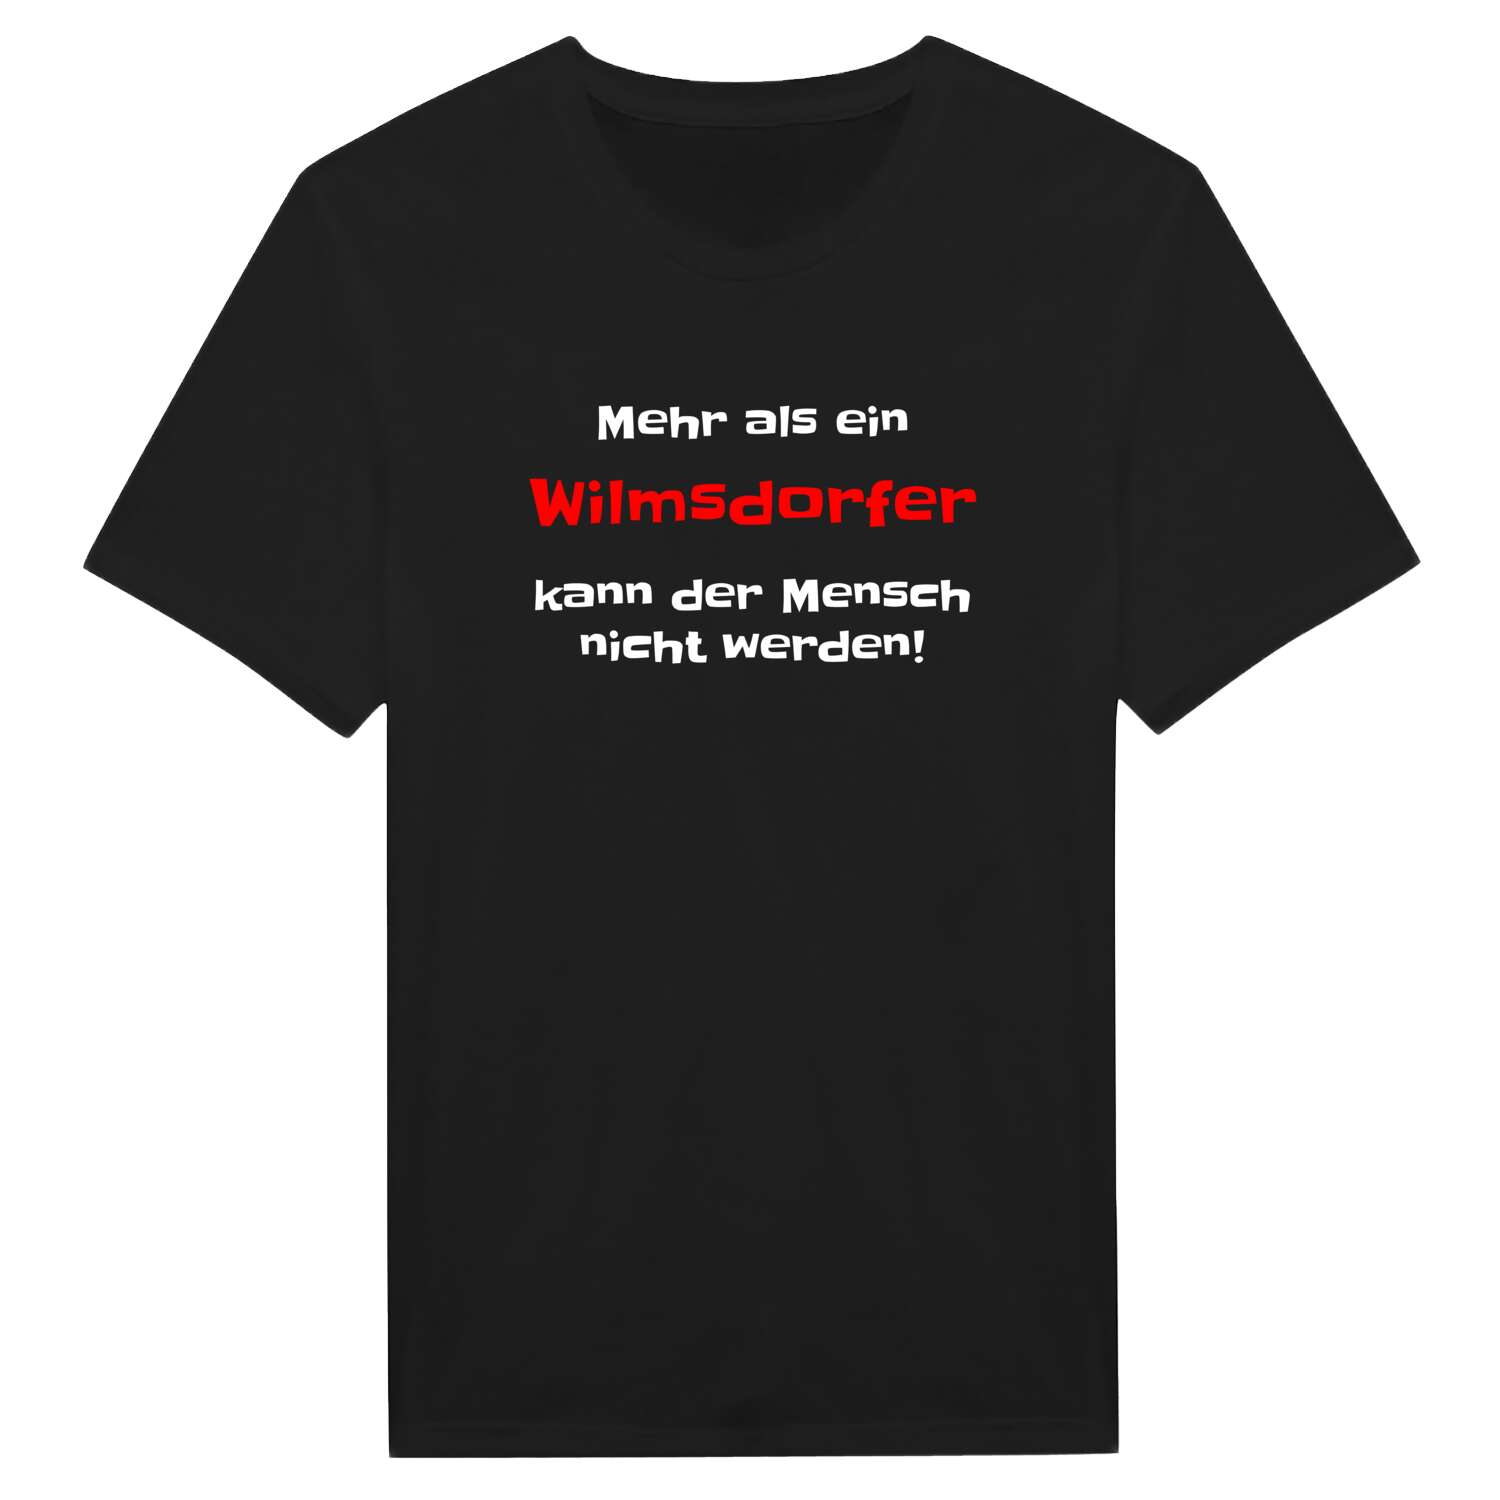 Wilmsdorf T-Shirt »Mehr als ein«